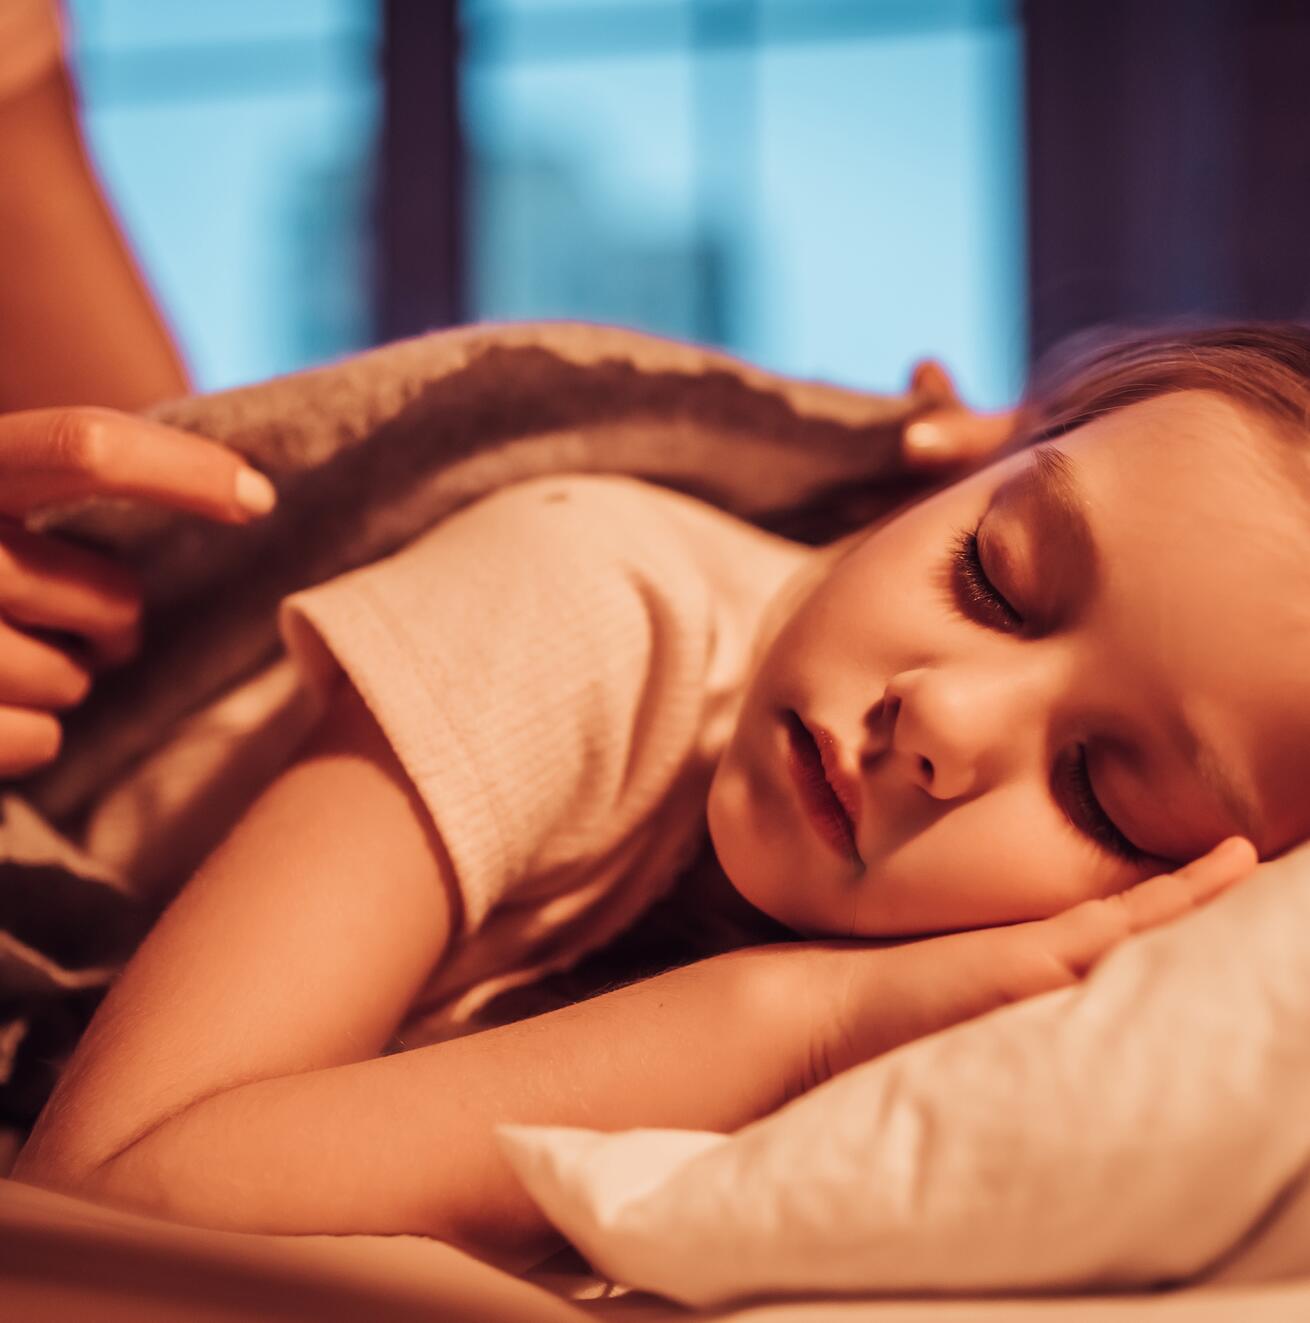 Ατοπικό έκζεμα: συμβουλές για έναν καλύτερο ύπνο